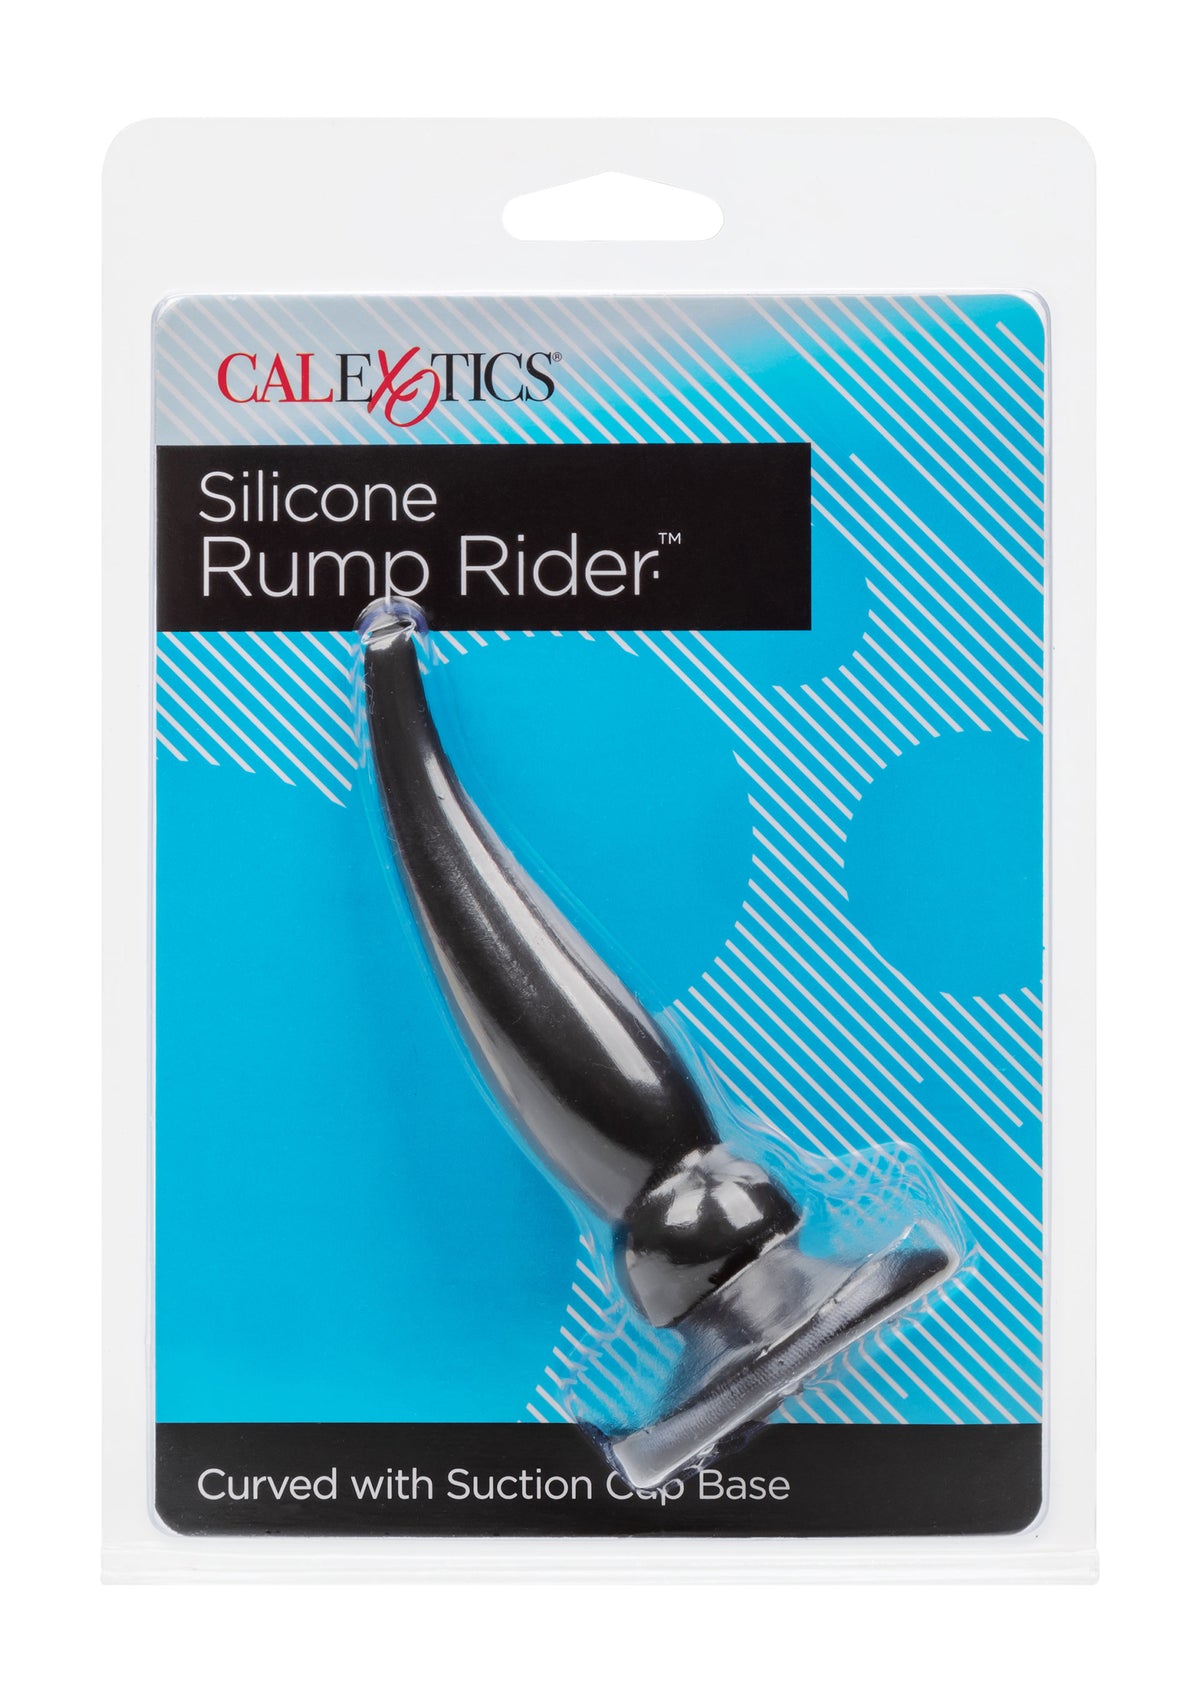 Silicone Rump Rider